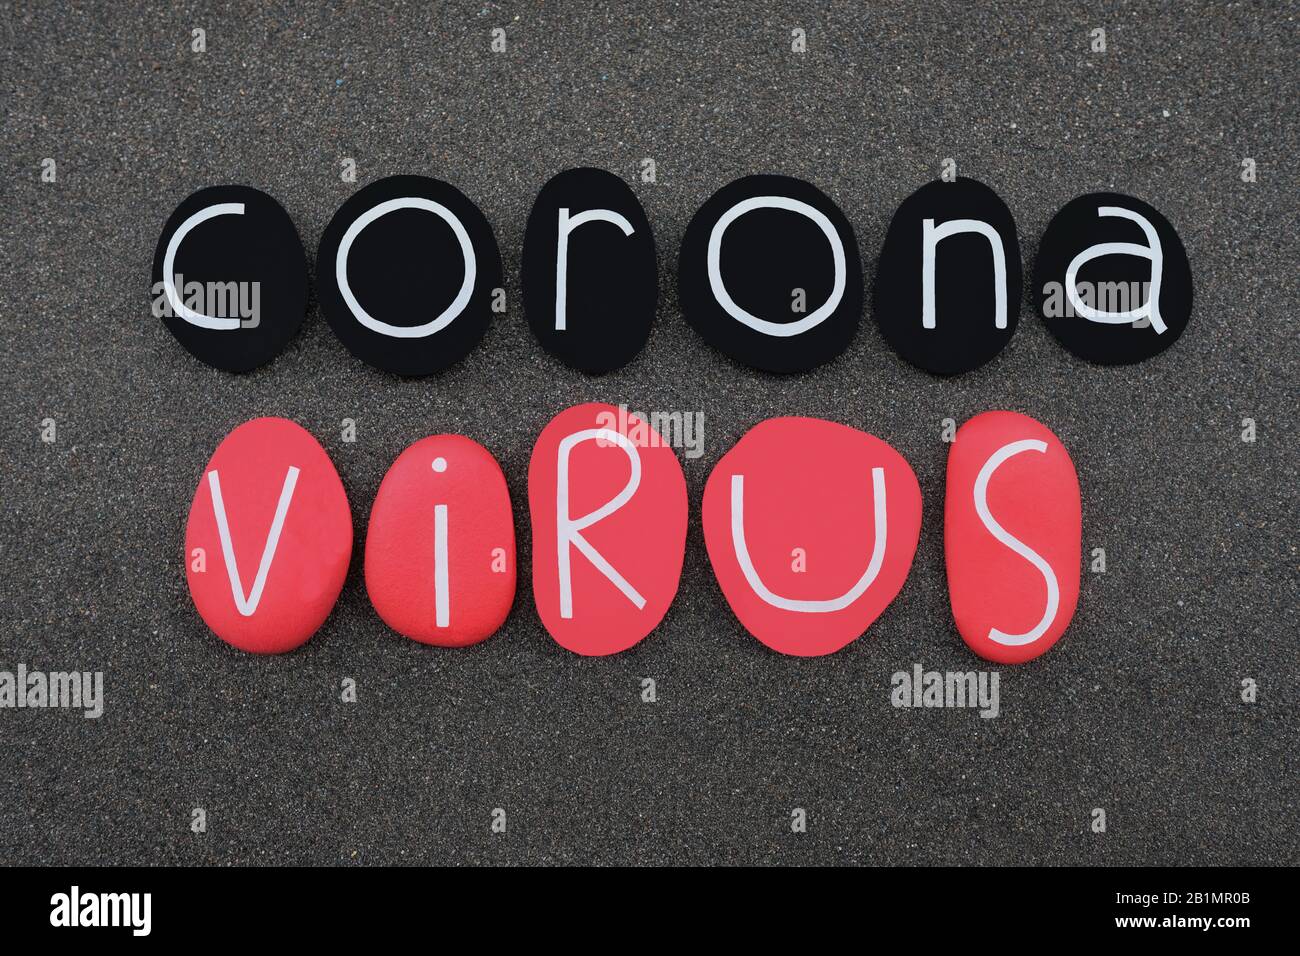 Coronavirus, virus che causa grave malattia polmonare che ha iniziato a Wuhan, Cina, testo composto con lettere di pietra di colore nero e rosso sui vulcani neri Foto Stock